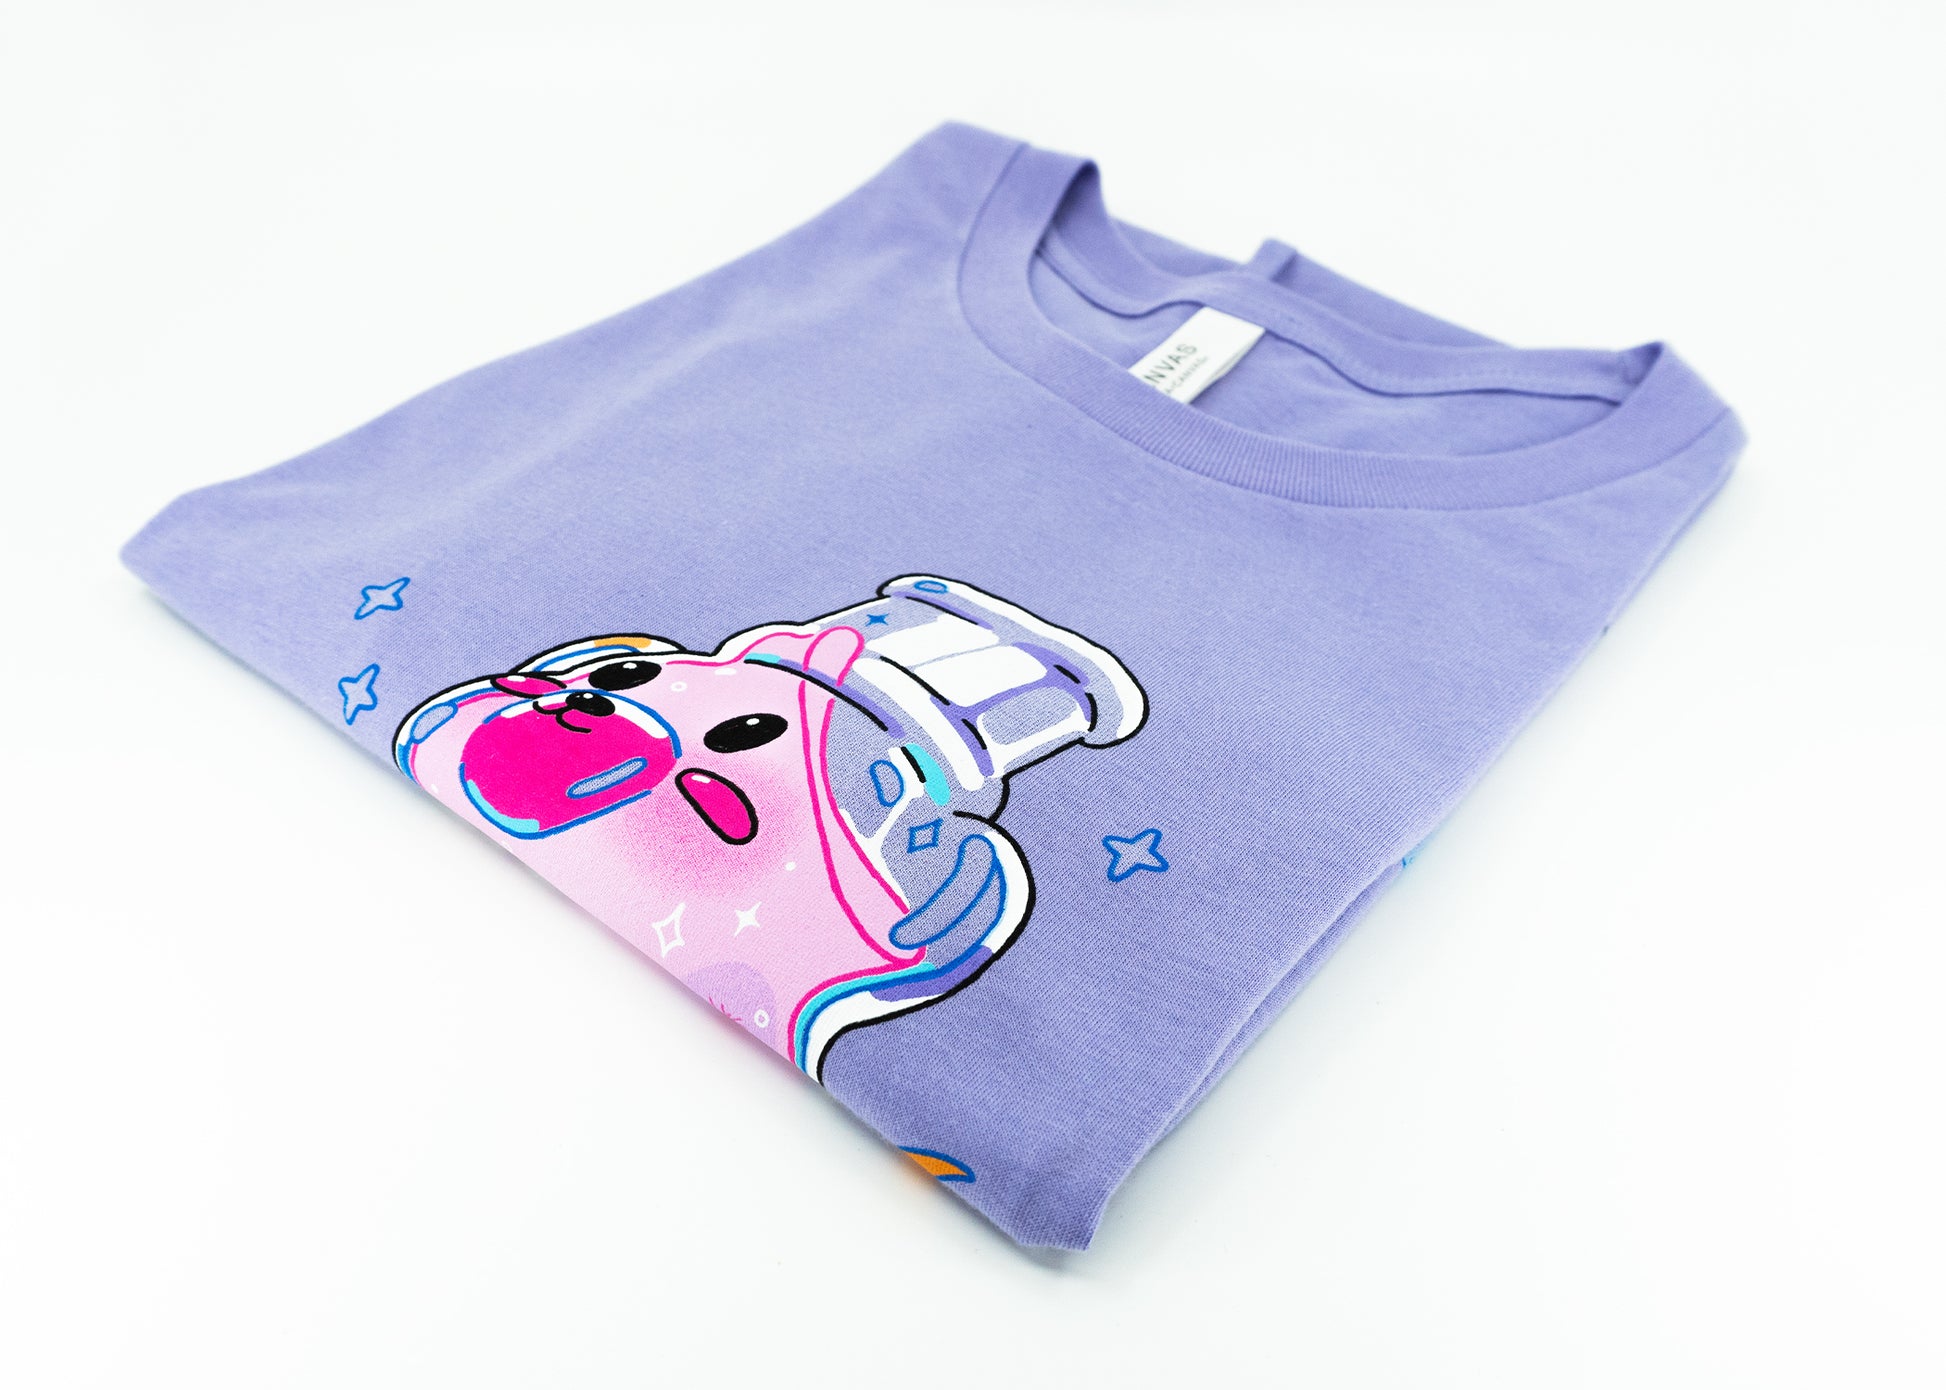 Big Mouth For Kids By Kids (F.K.B.K.) T-Shirt by Titmouse Detail View